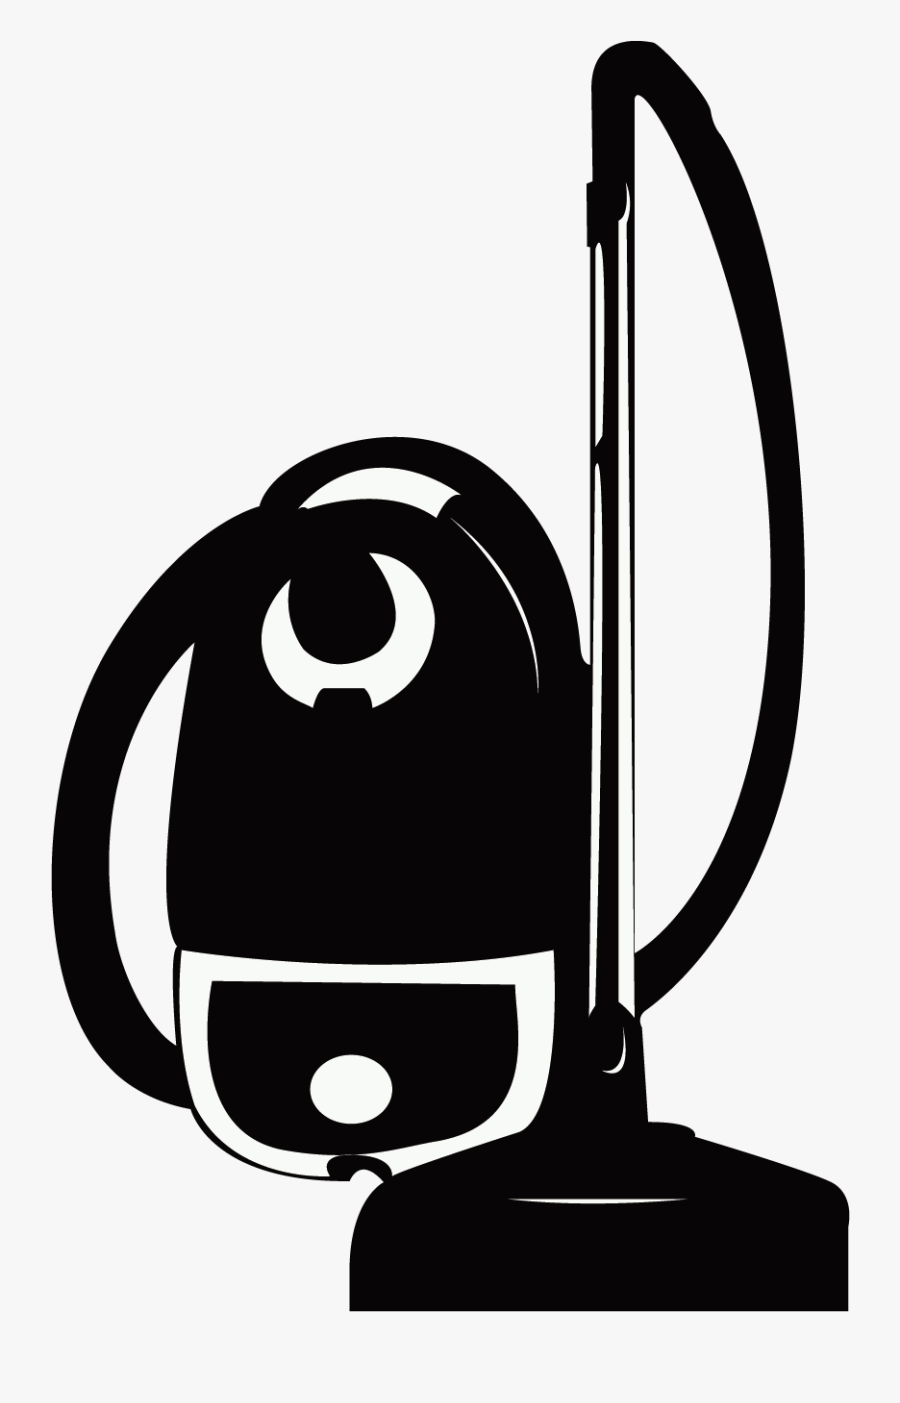 Vacuum Cleaner Silhouette At Getdrawings - Vacuum Cleaner Silhouette Png, Transparent Clipart